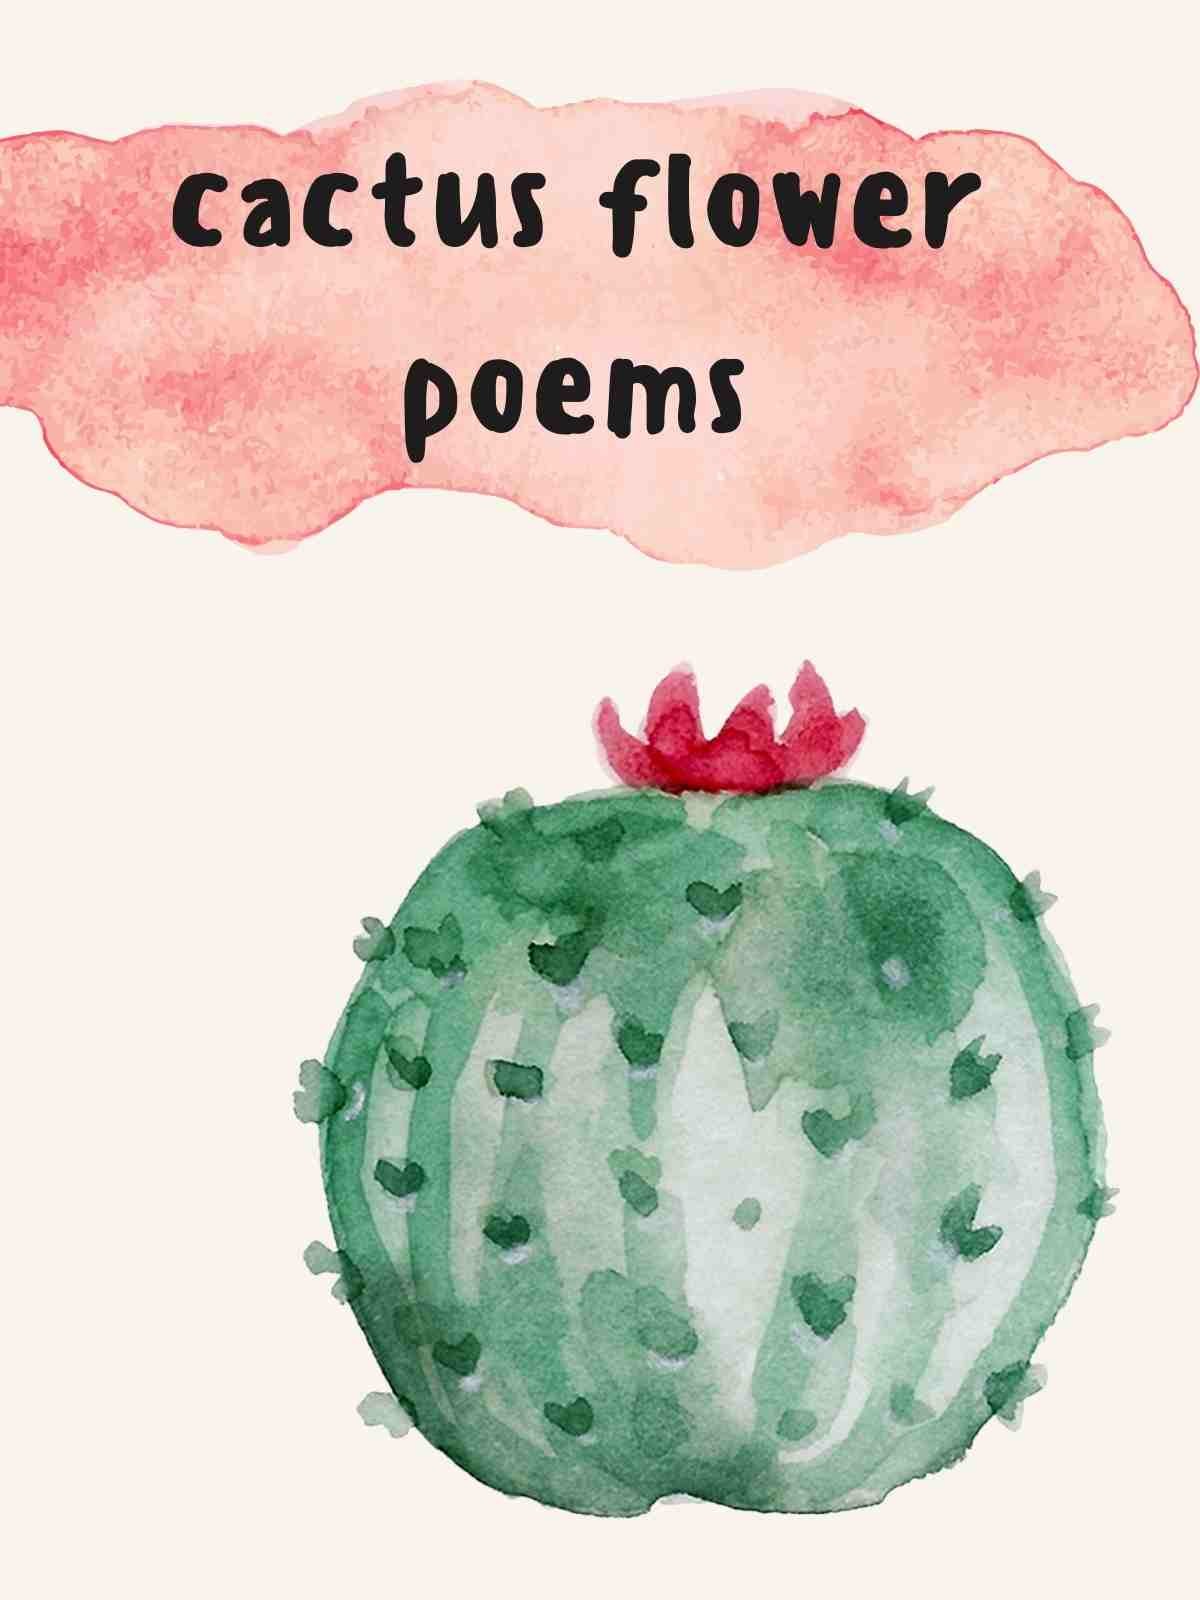 Desert Cactus flower poems